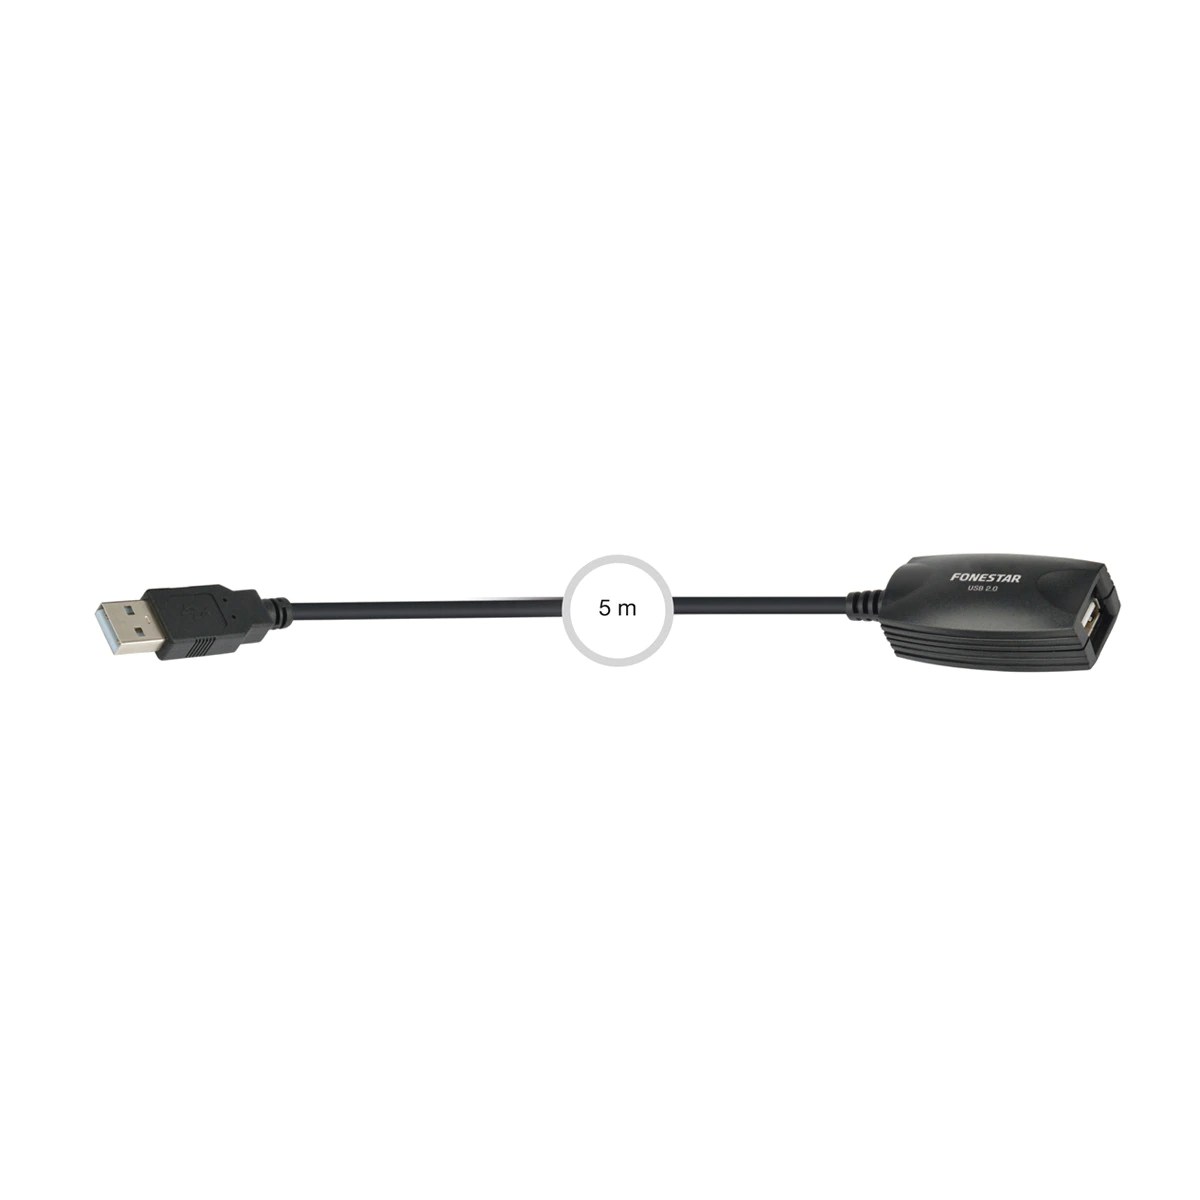 Cable USB Fonestar 7848-5 de 5 metros